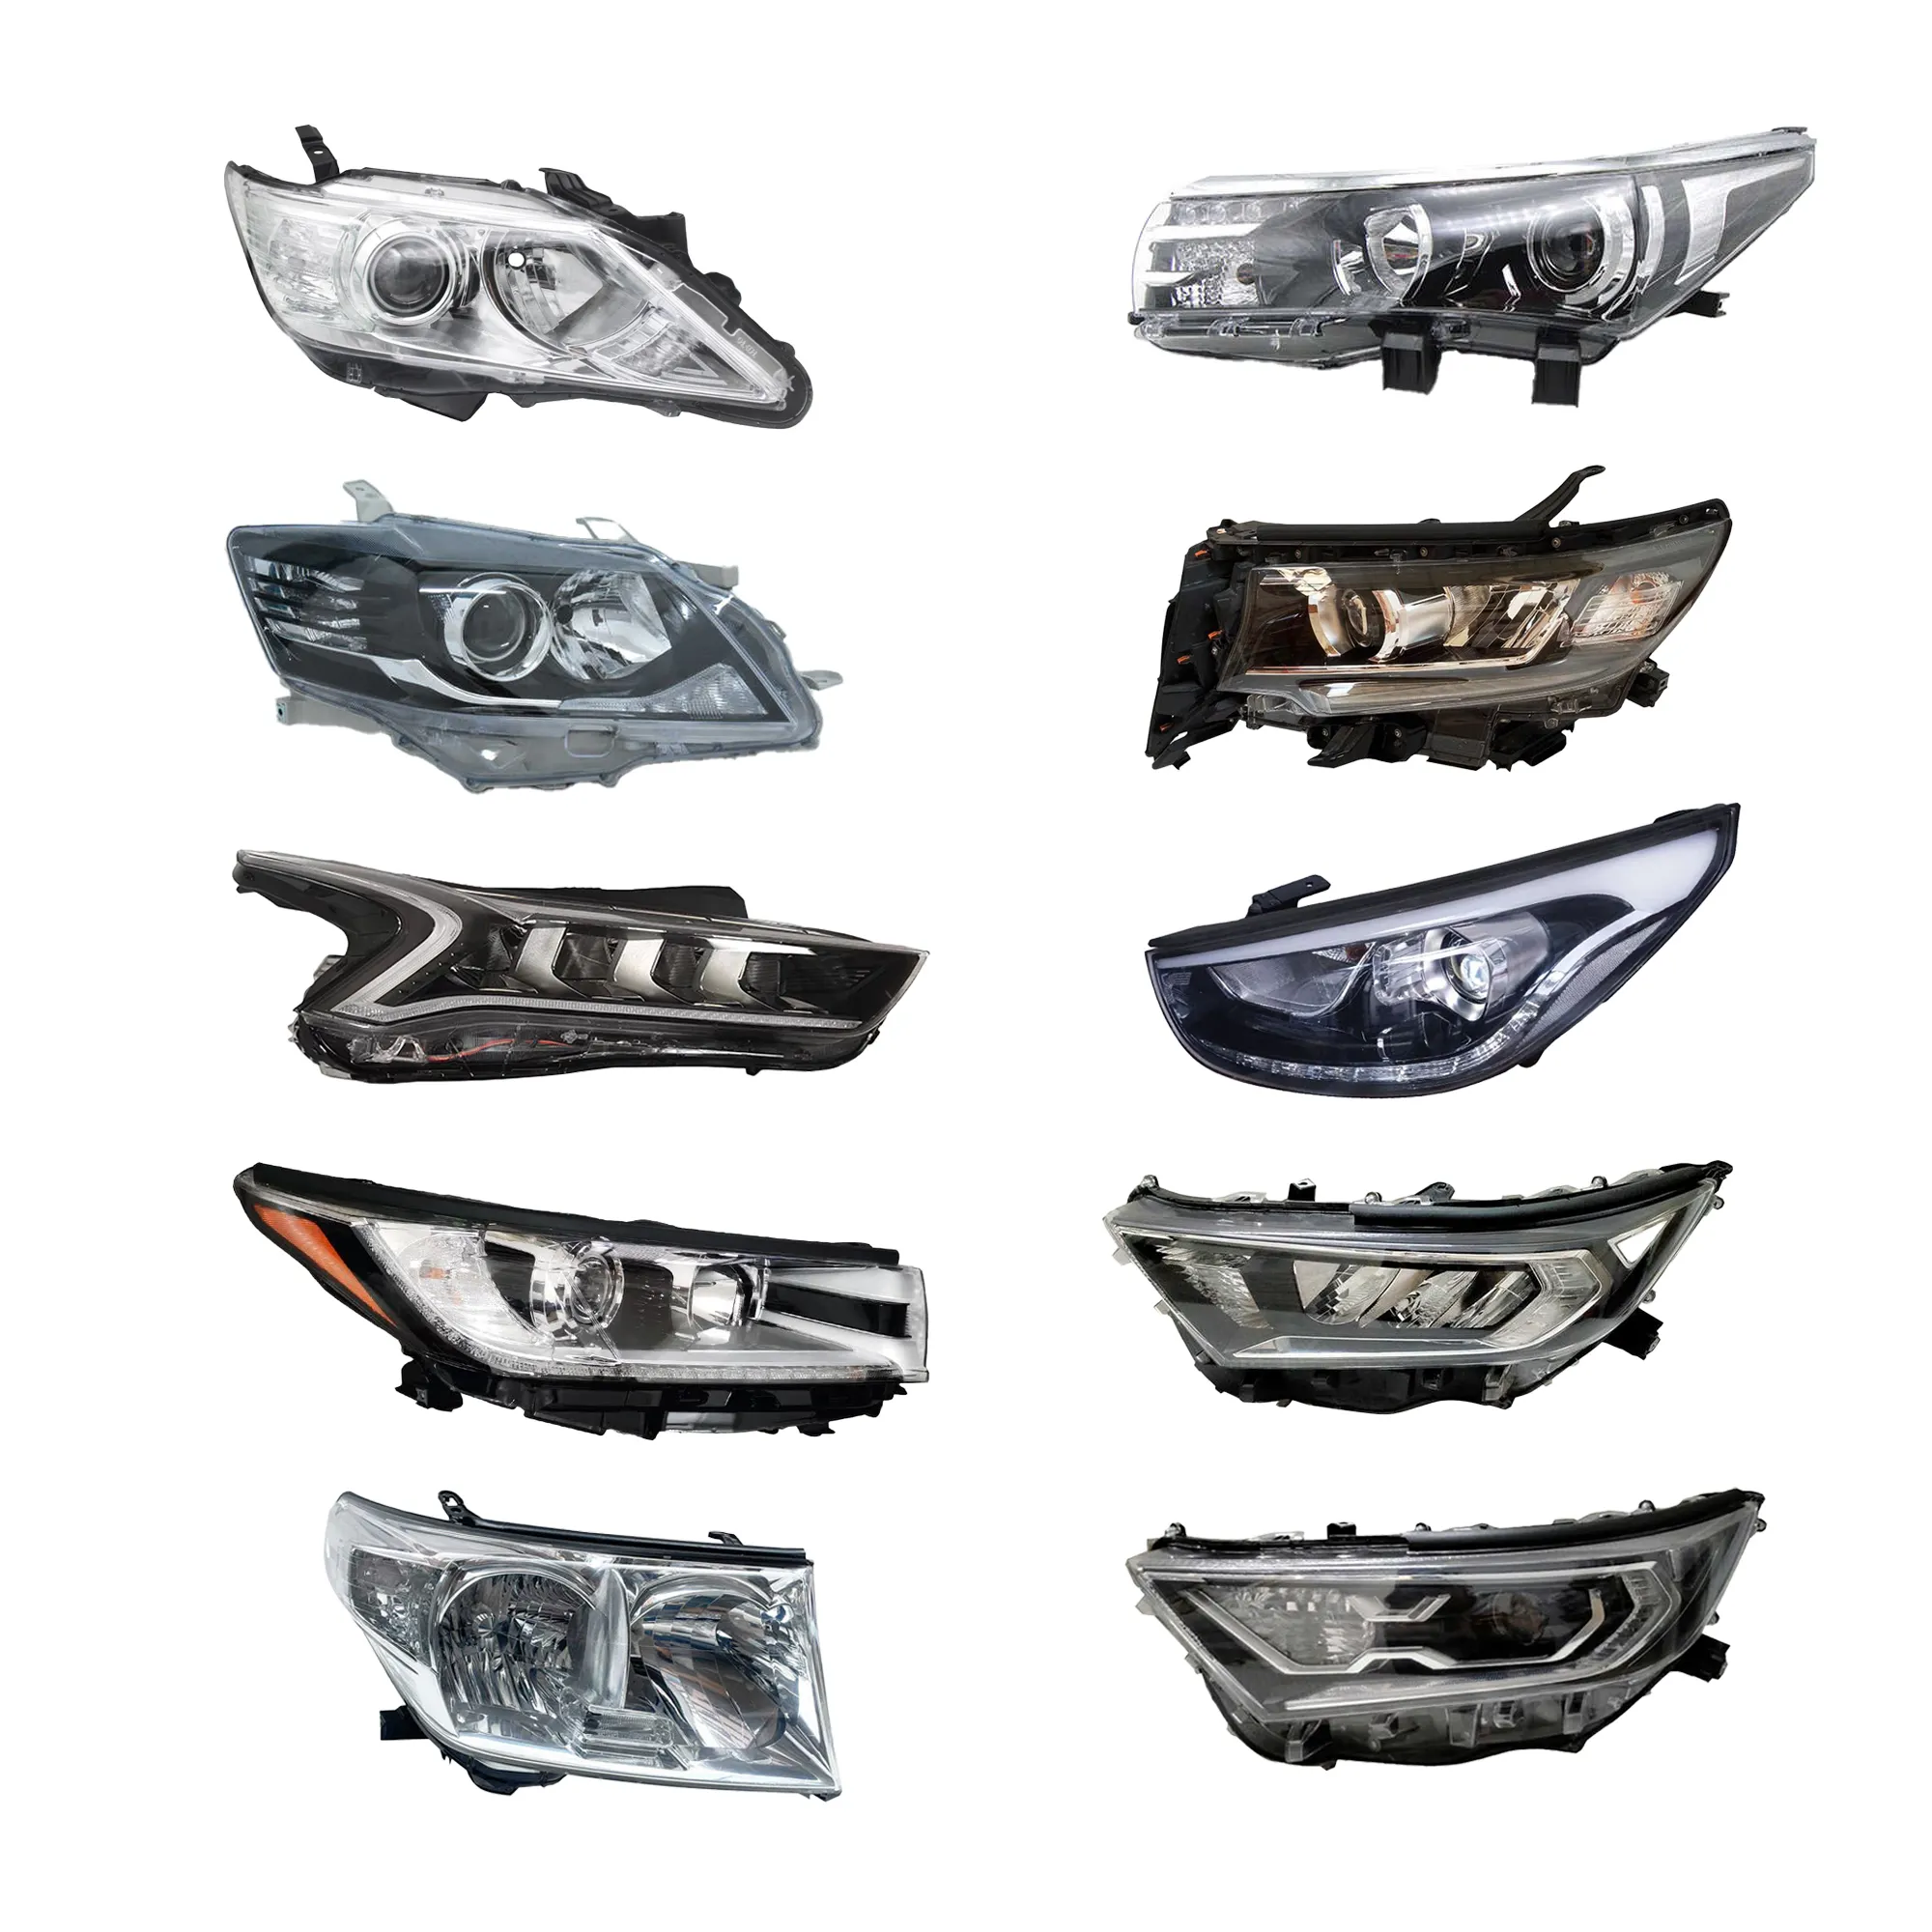 Hochwertiger Scheinwerfer Scheinwerfer LED-Scheinwerfer für japanisches koreanisches Auto Toyota Nissan KIA Hyundai